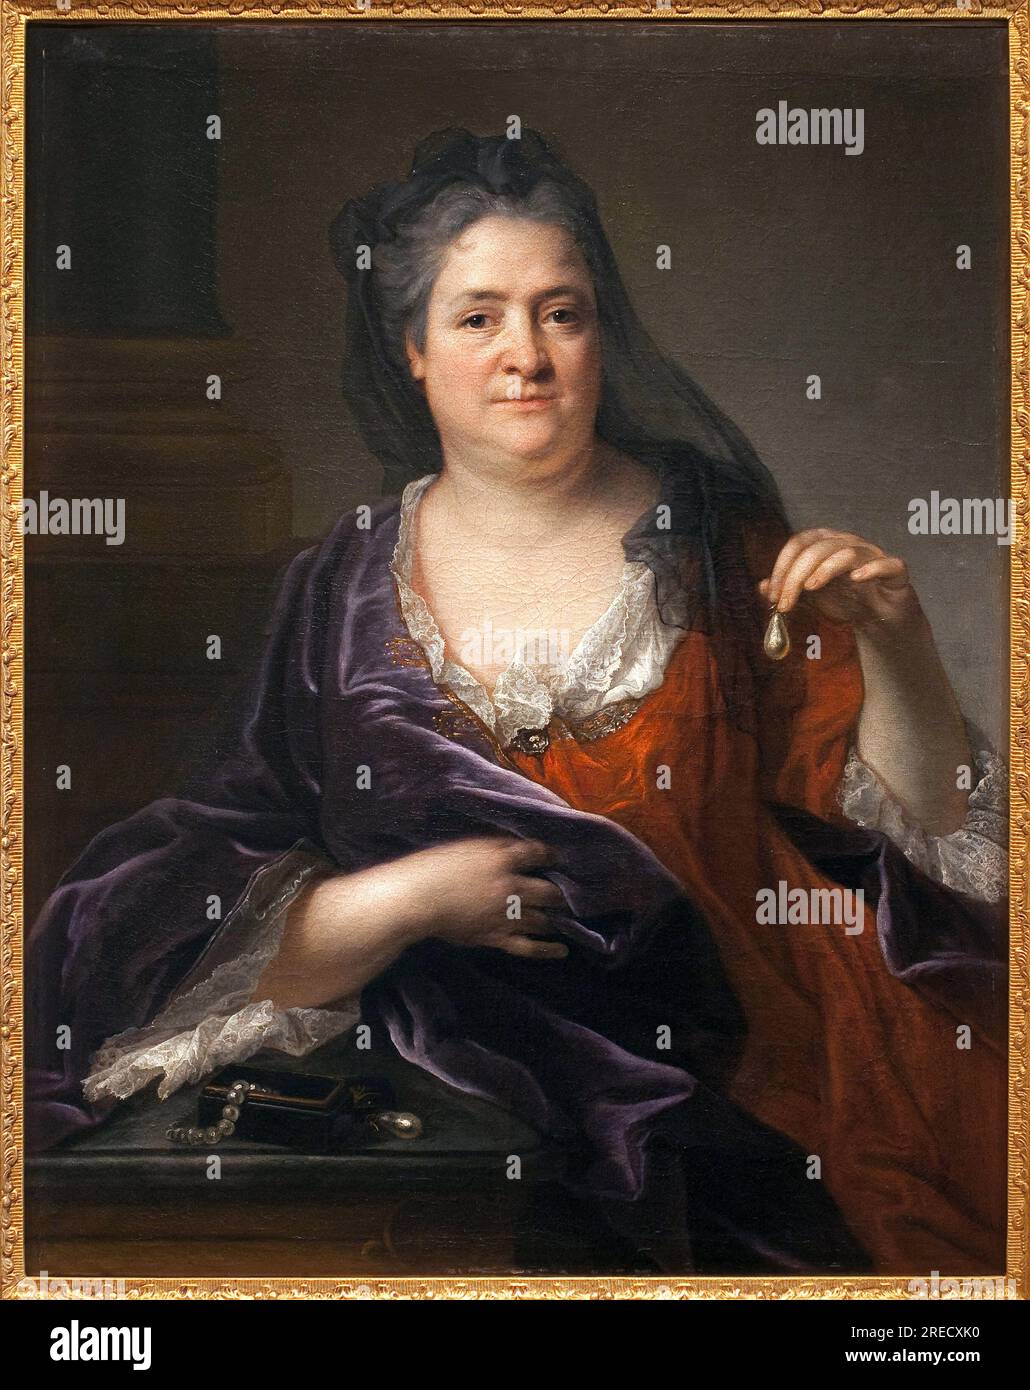 La duchesse d'Orleans ou la Palatine Elisabeth-Charlotte ou Elisabeth Charlotte de Baviere)(1657-1722) Peinture attribuee a Andre Bouys (1656-1740), huile sur toile, vers 1700. Museo delle Belle Arti di Niort. Foto Stock